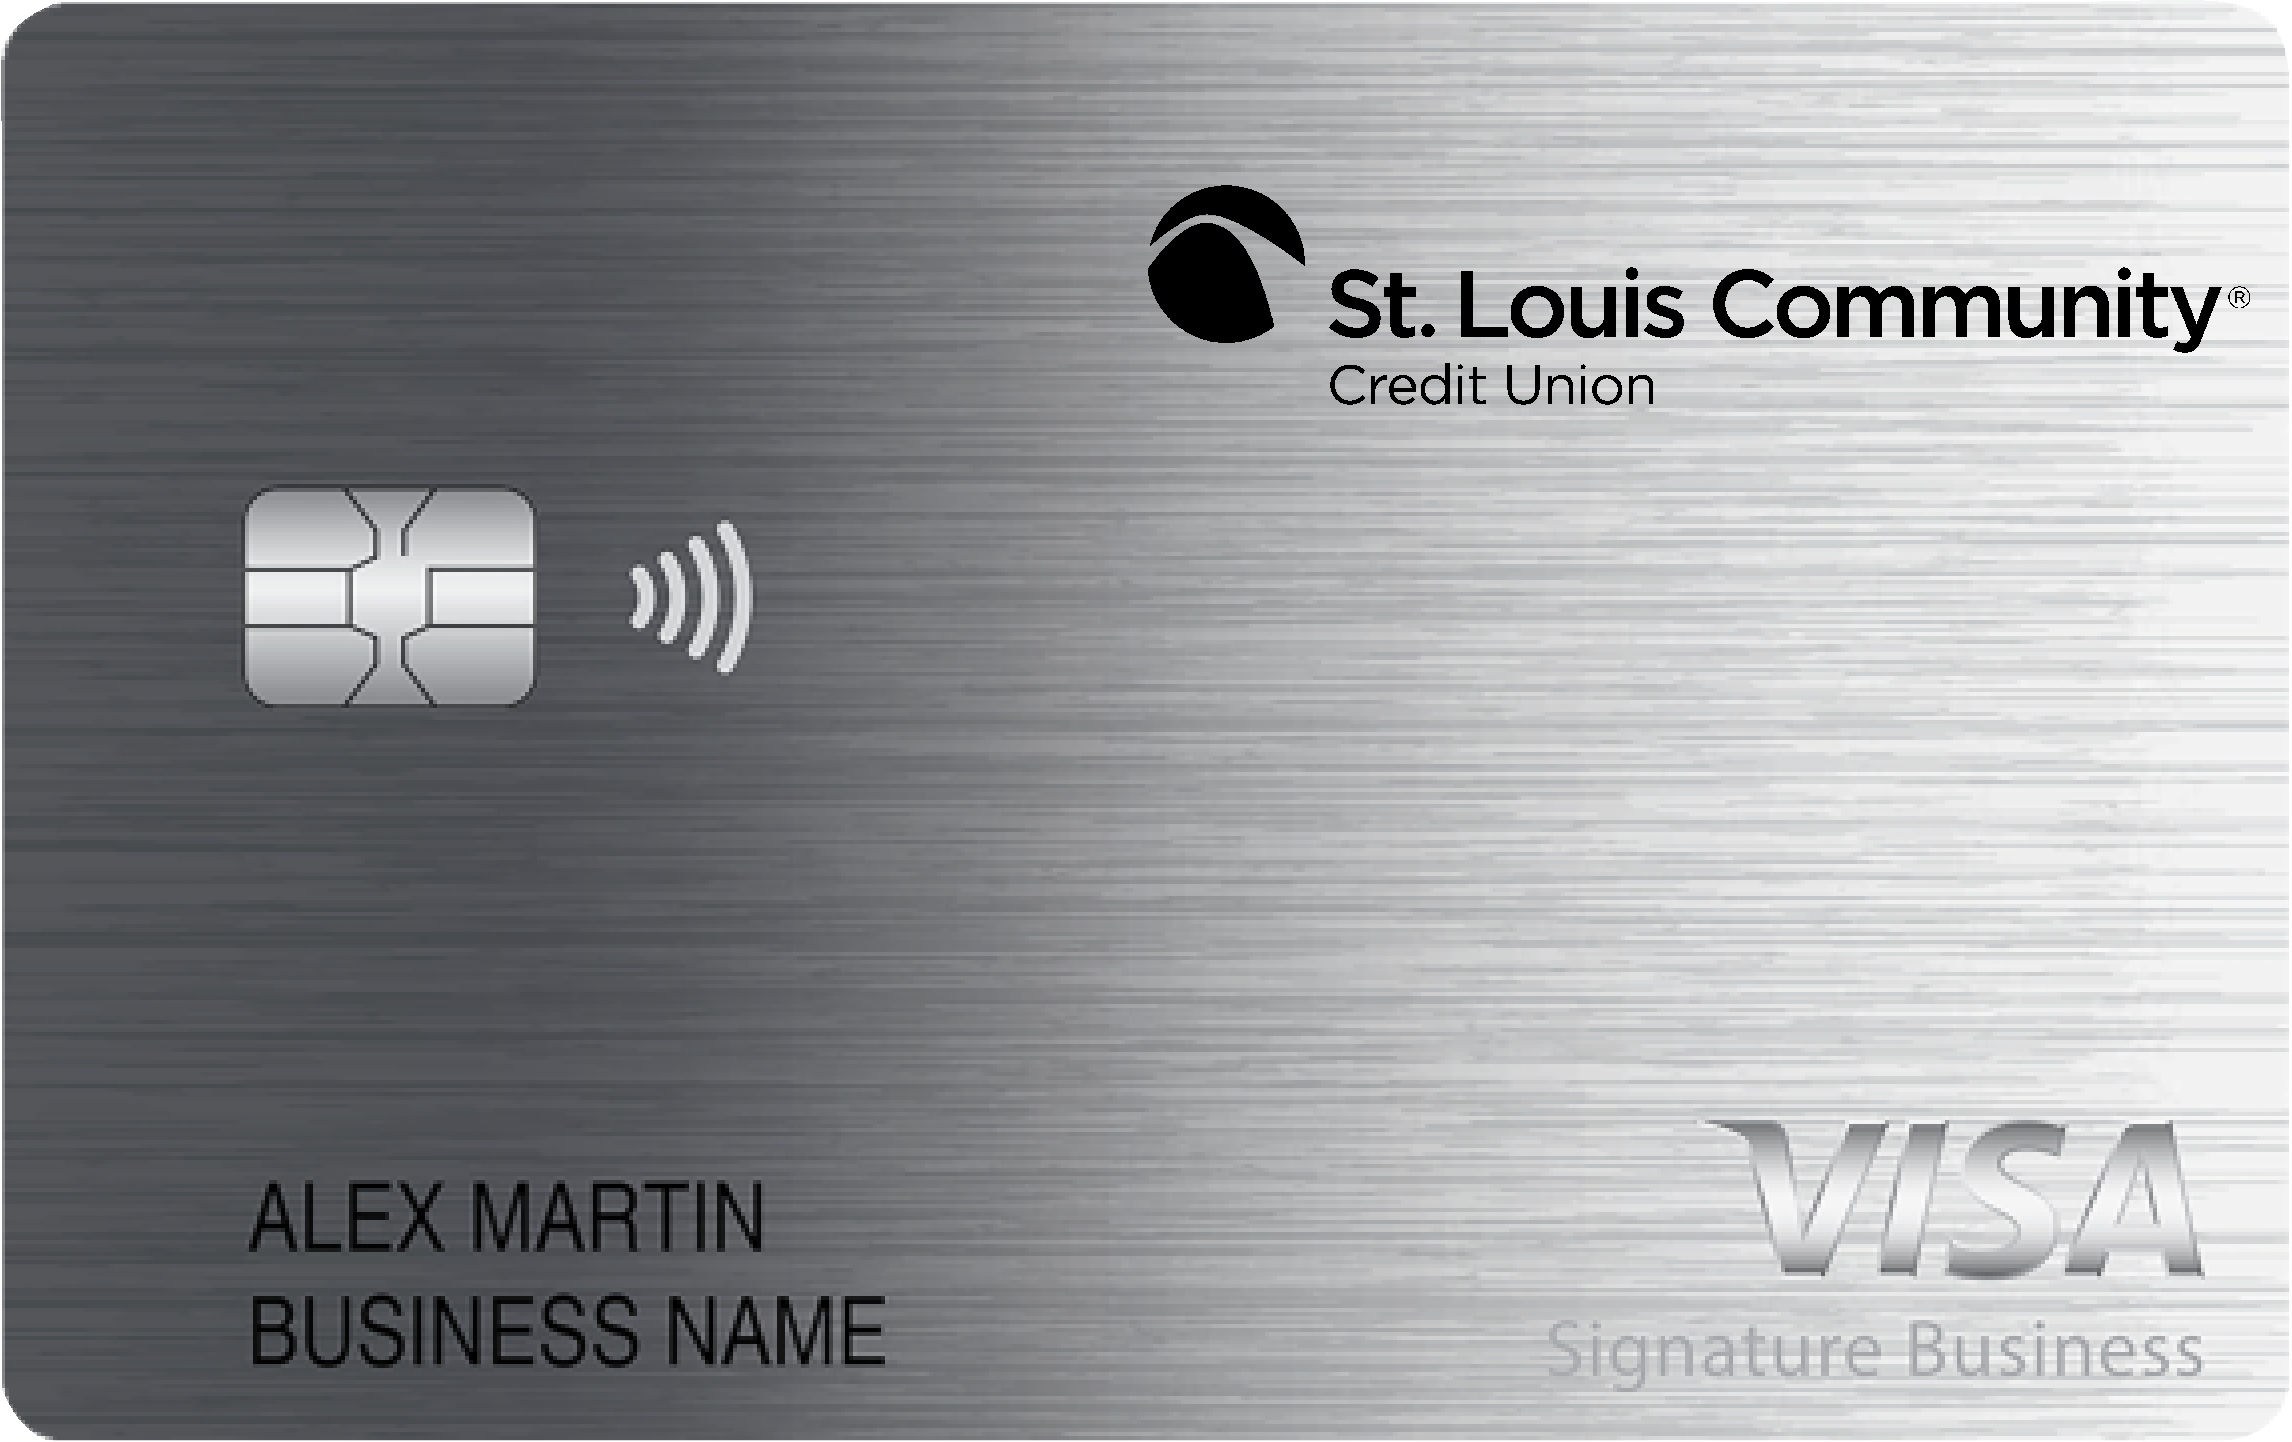 St. Louis Community Credit Union Smart Business Rewards Card